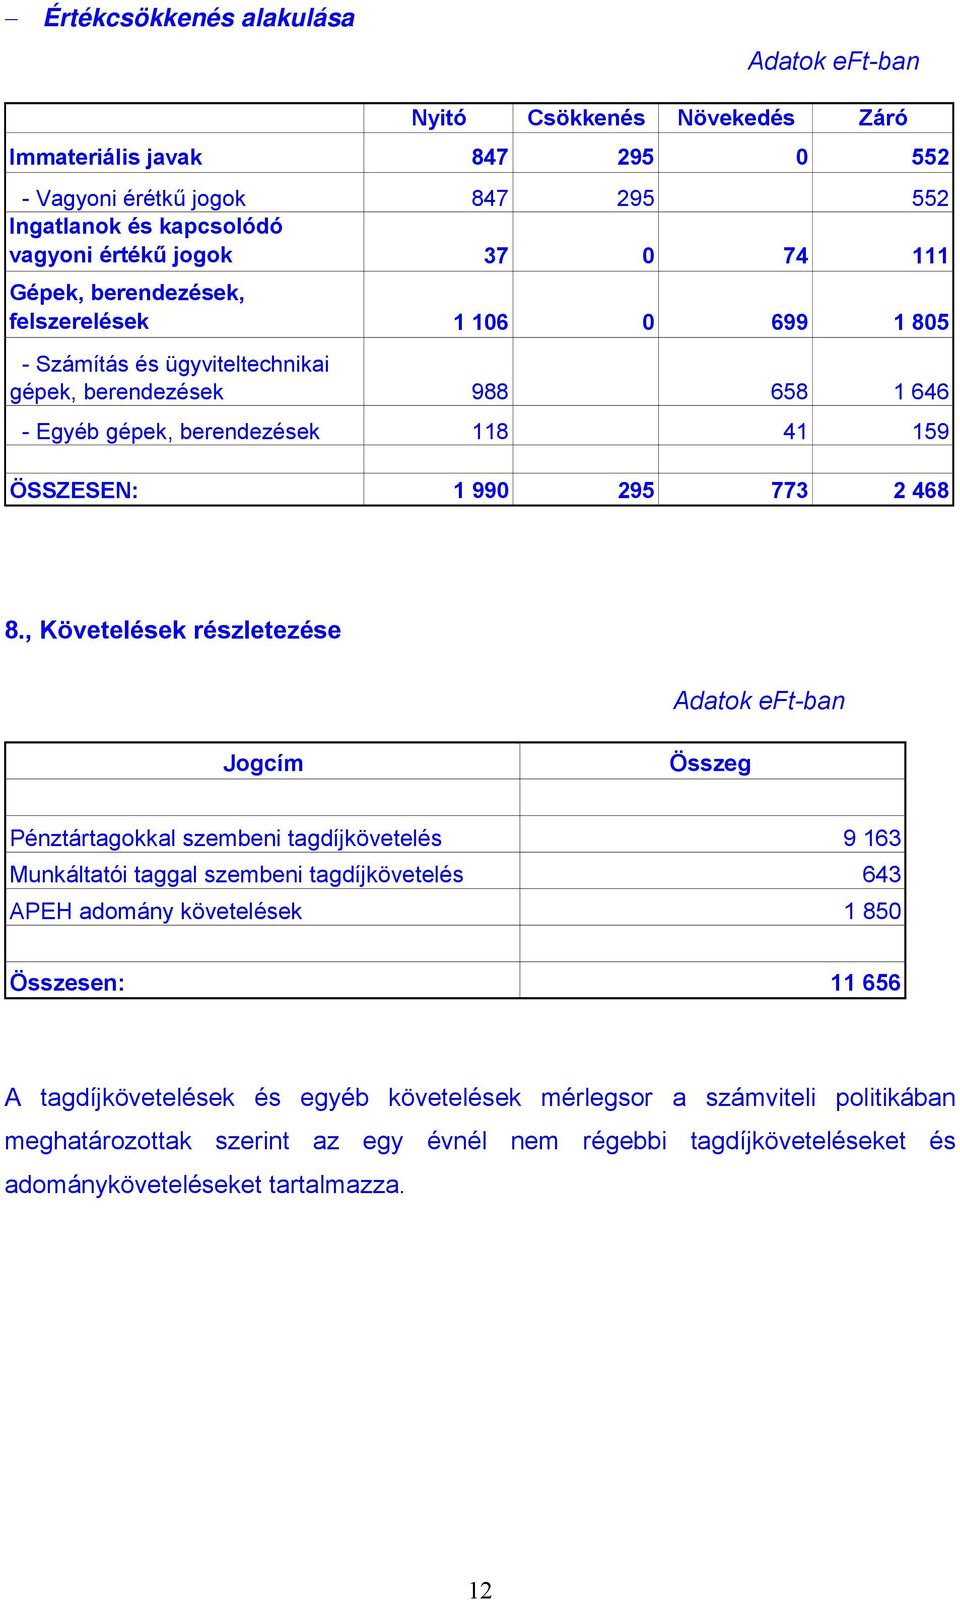 8., Követelések részletezése Adatok eft-ban Jogcím Összeg Pénztártagokkal szembeni tagdíjkövetelés 9 163 Munkáltatói taggal szembeni tagdíjkövetelés 643 APEH adomány követelések 1 850